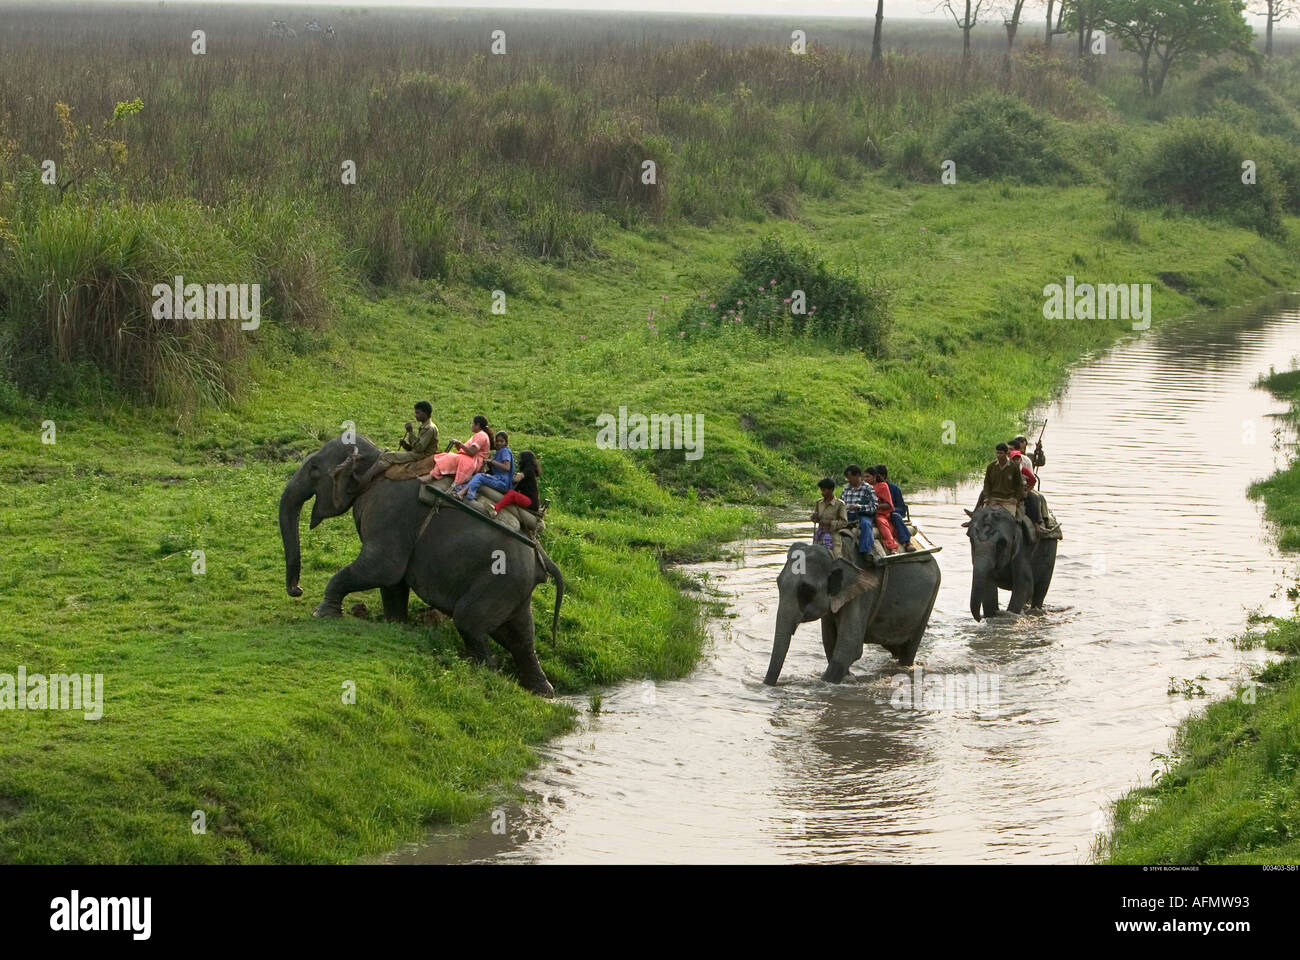 Gruppo di persone che attraversa un fiume sul retro dell'elefante India Foto Stock